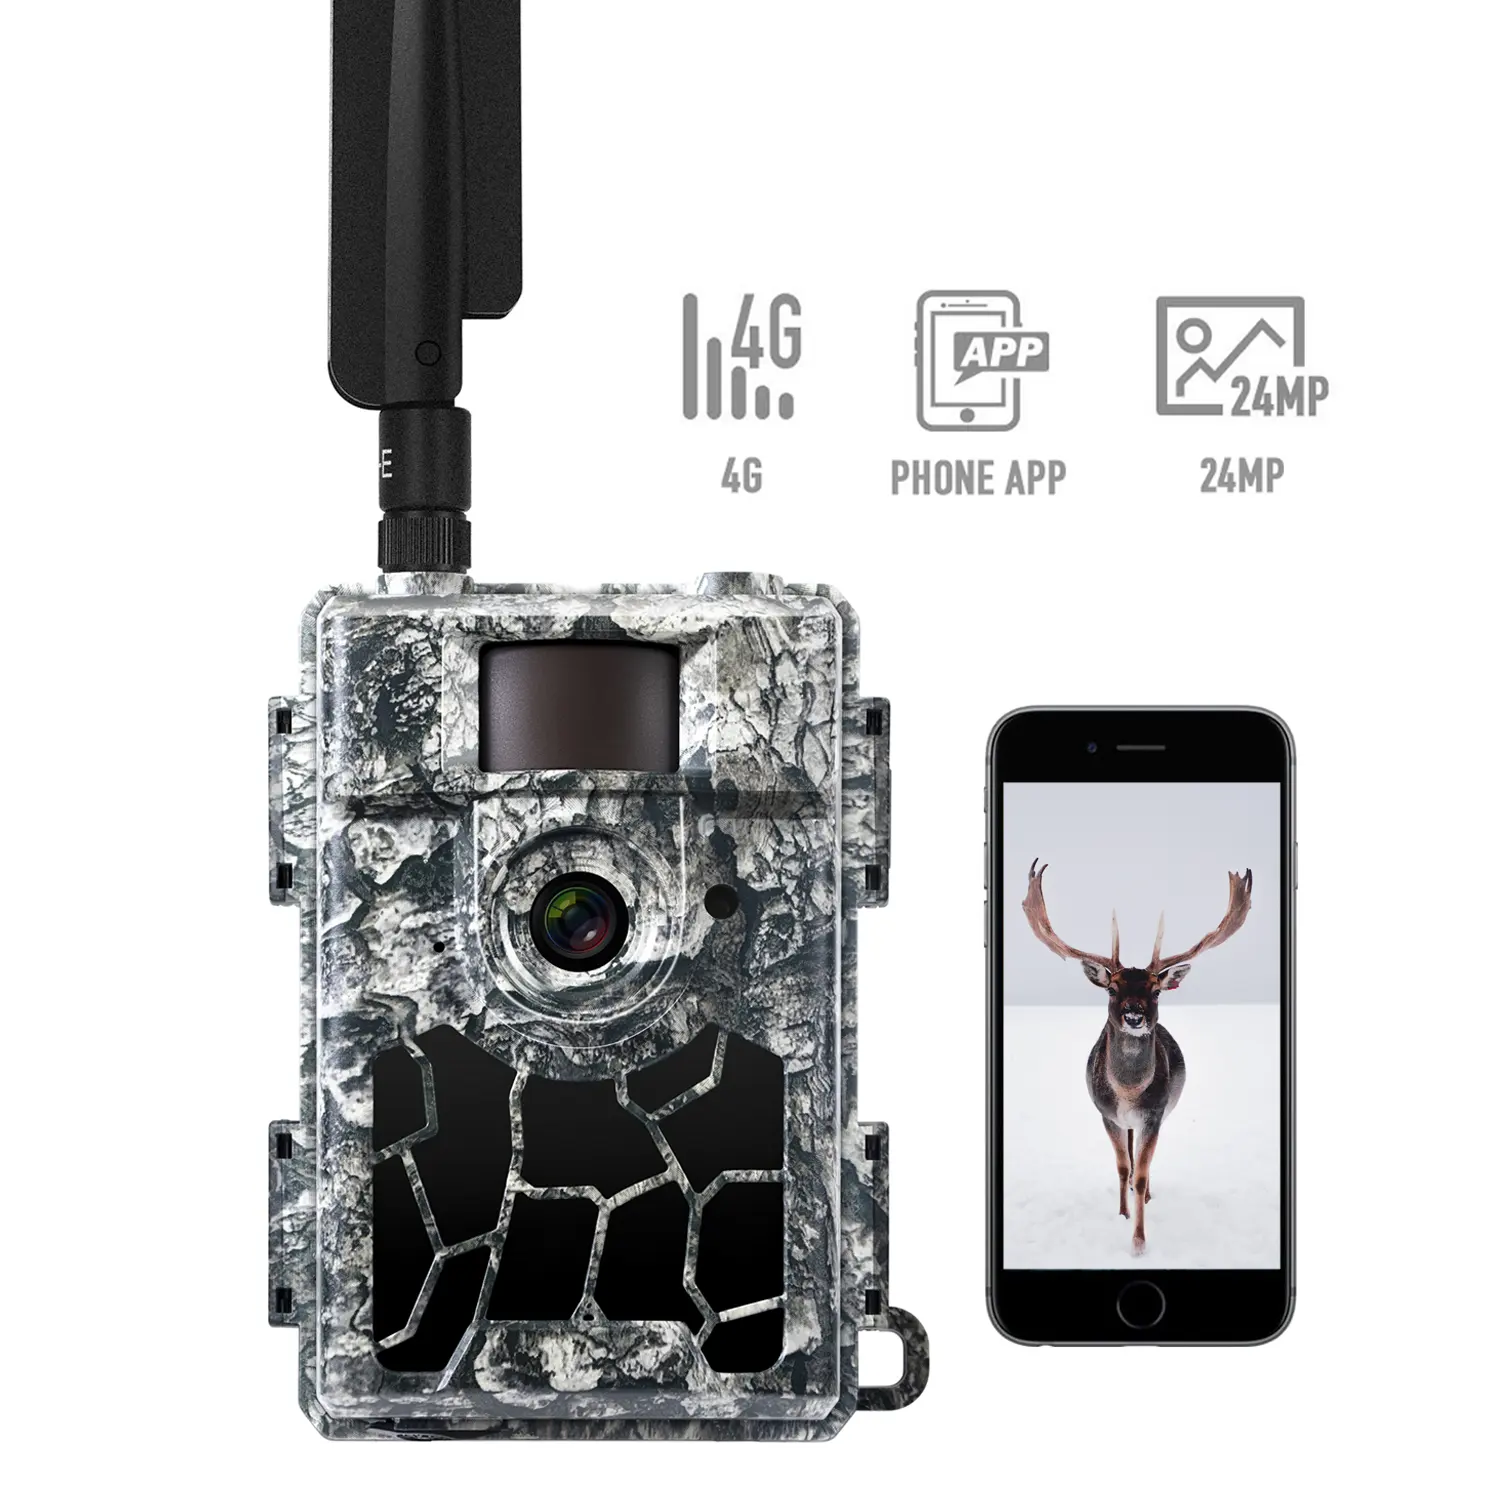 Willfine 5.8cs 4G wildcam lte jagdkamera gps açık oyun kamera avcılık takip kamerası